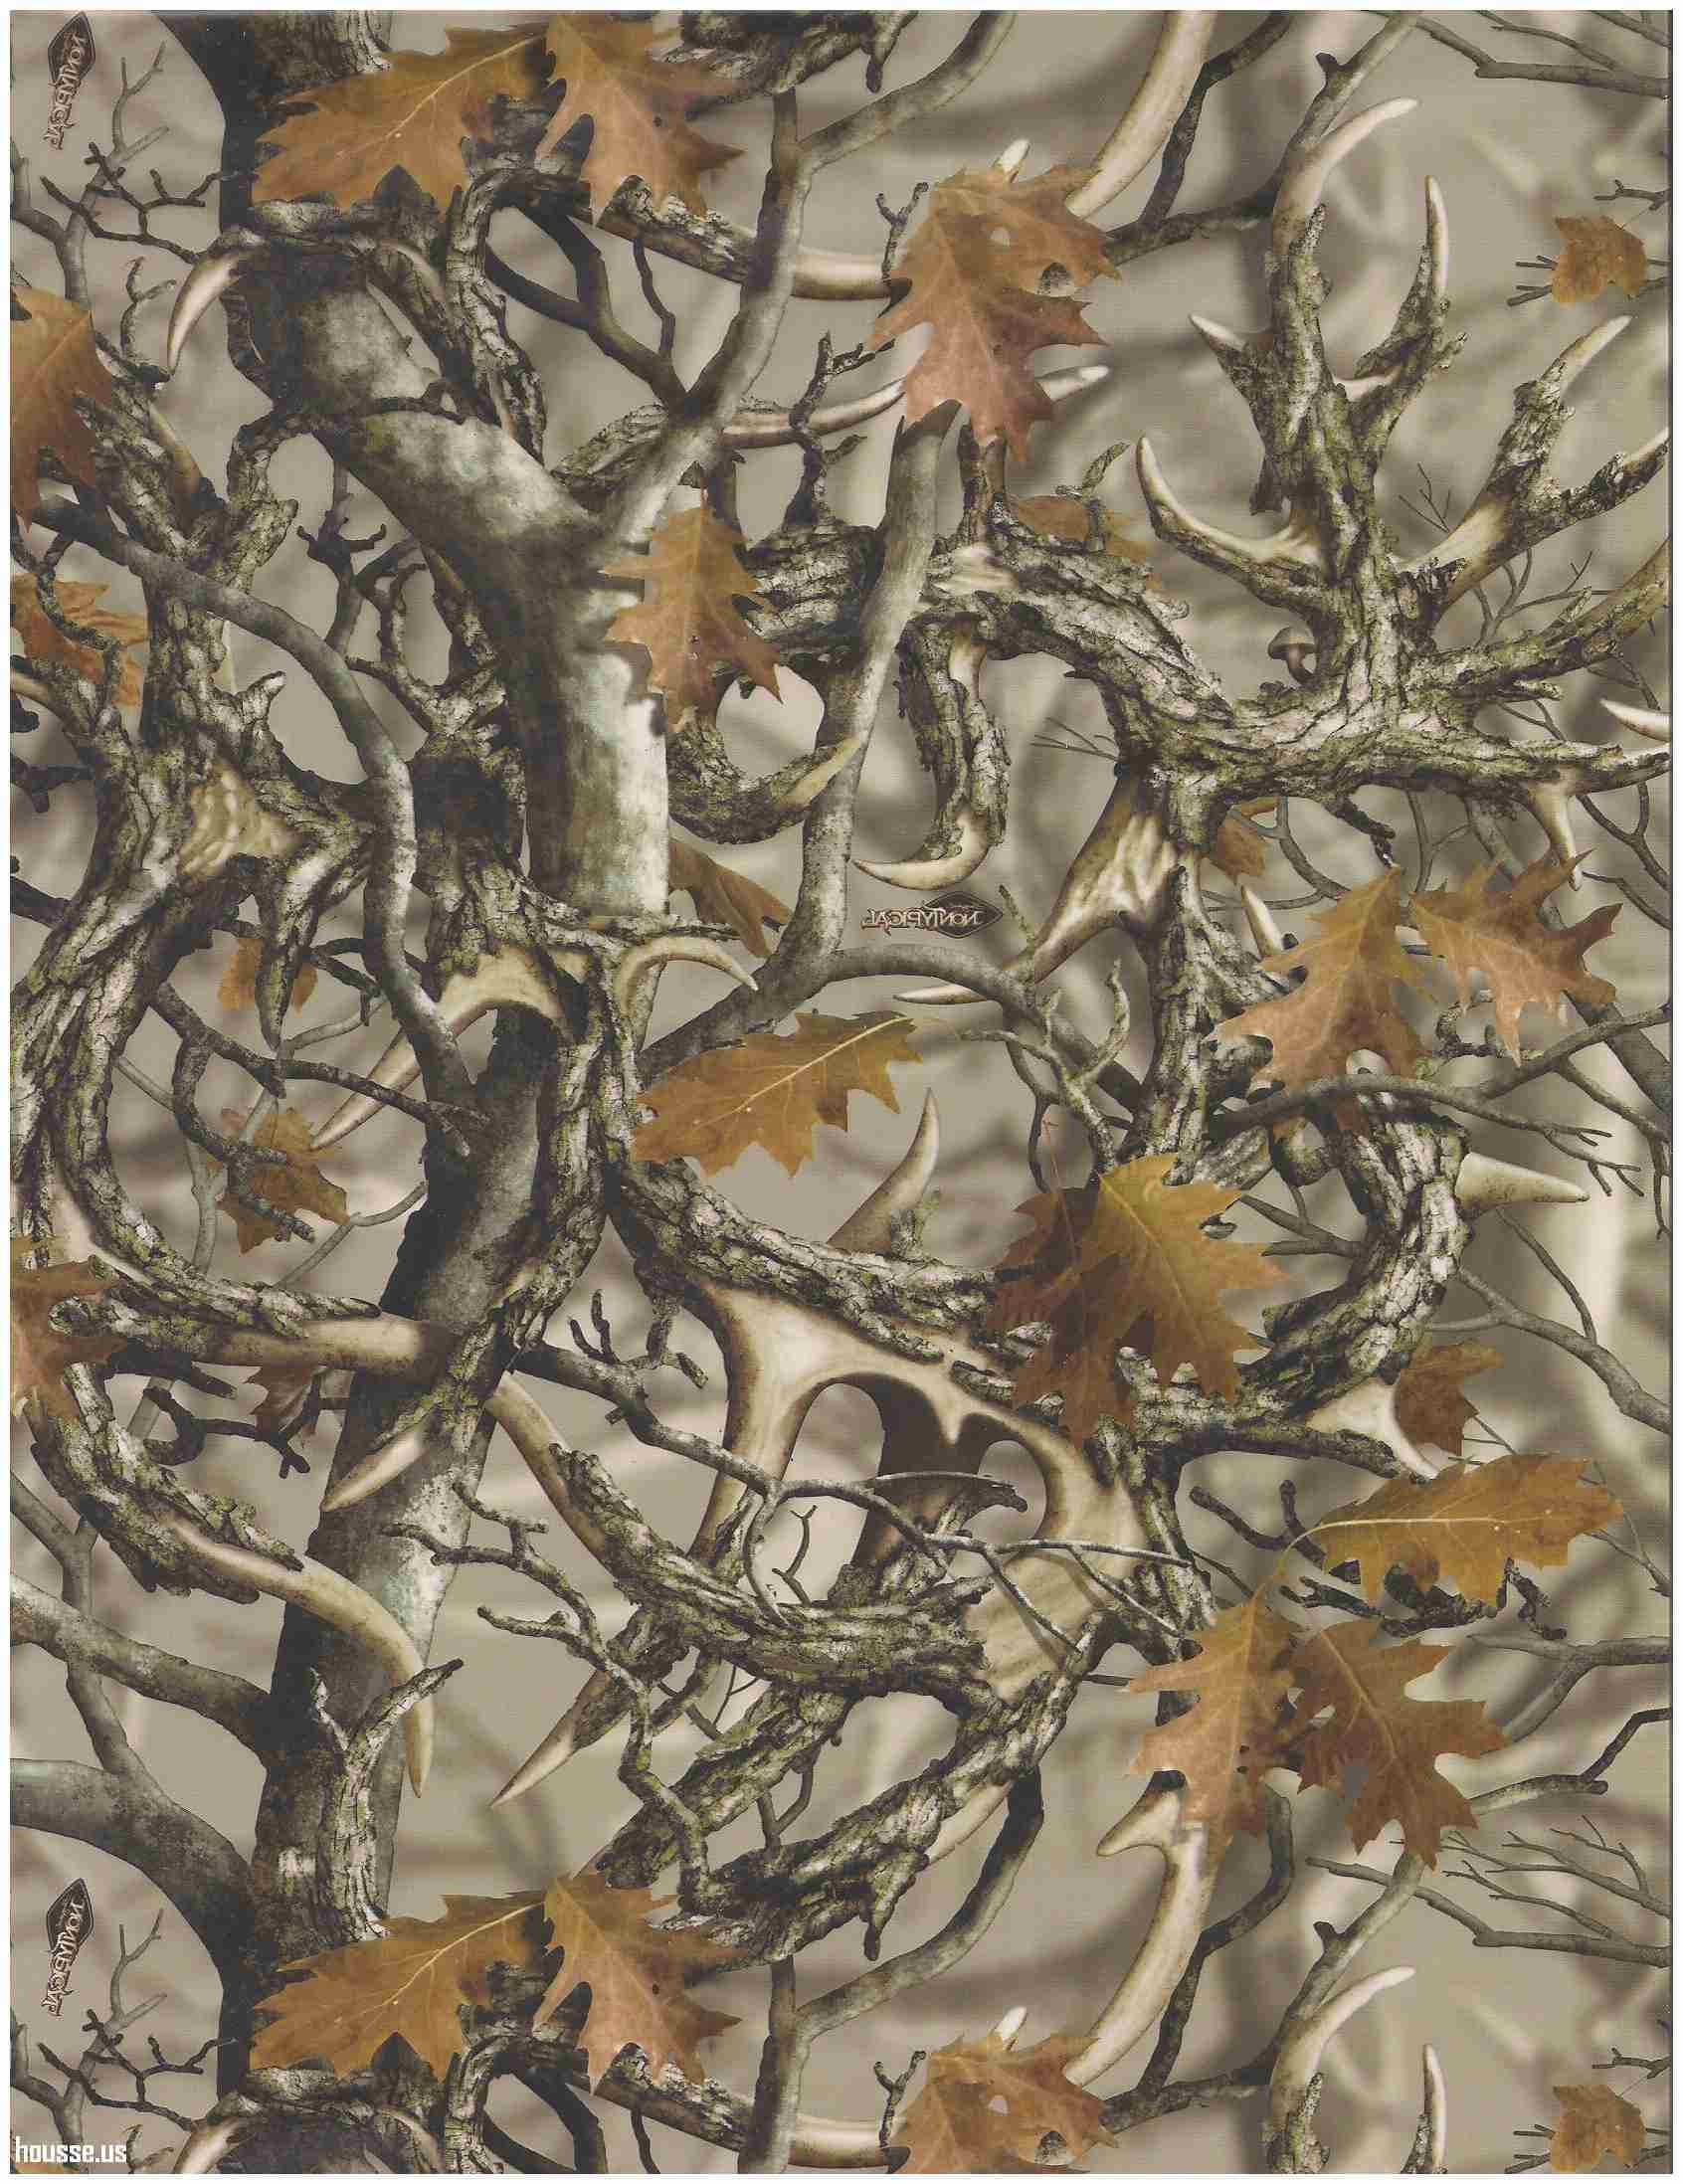 🔥 [37+] Mossy Oak Wallpapers | WallpaperSafari